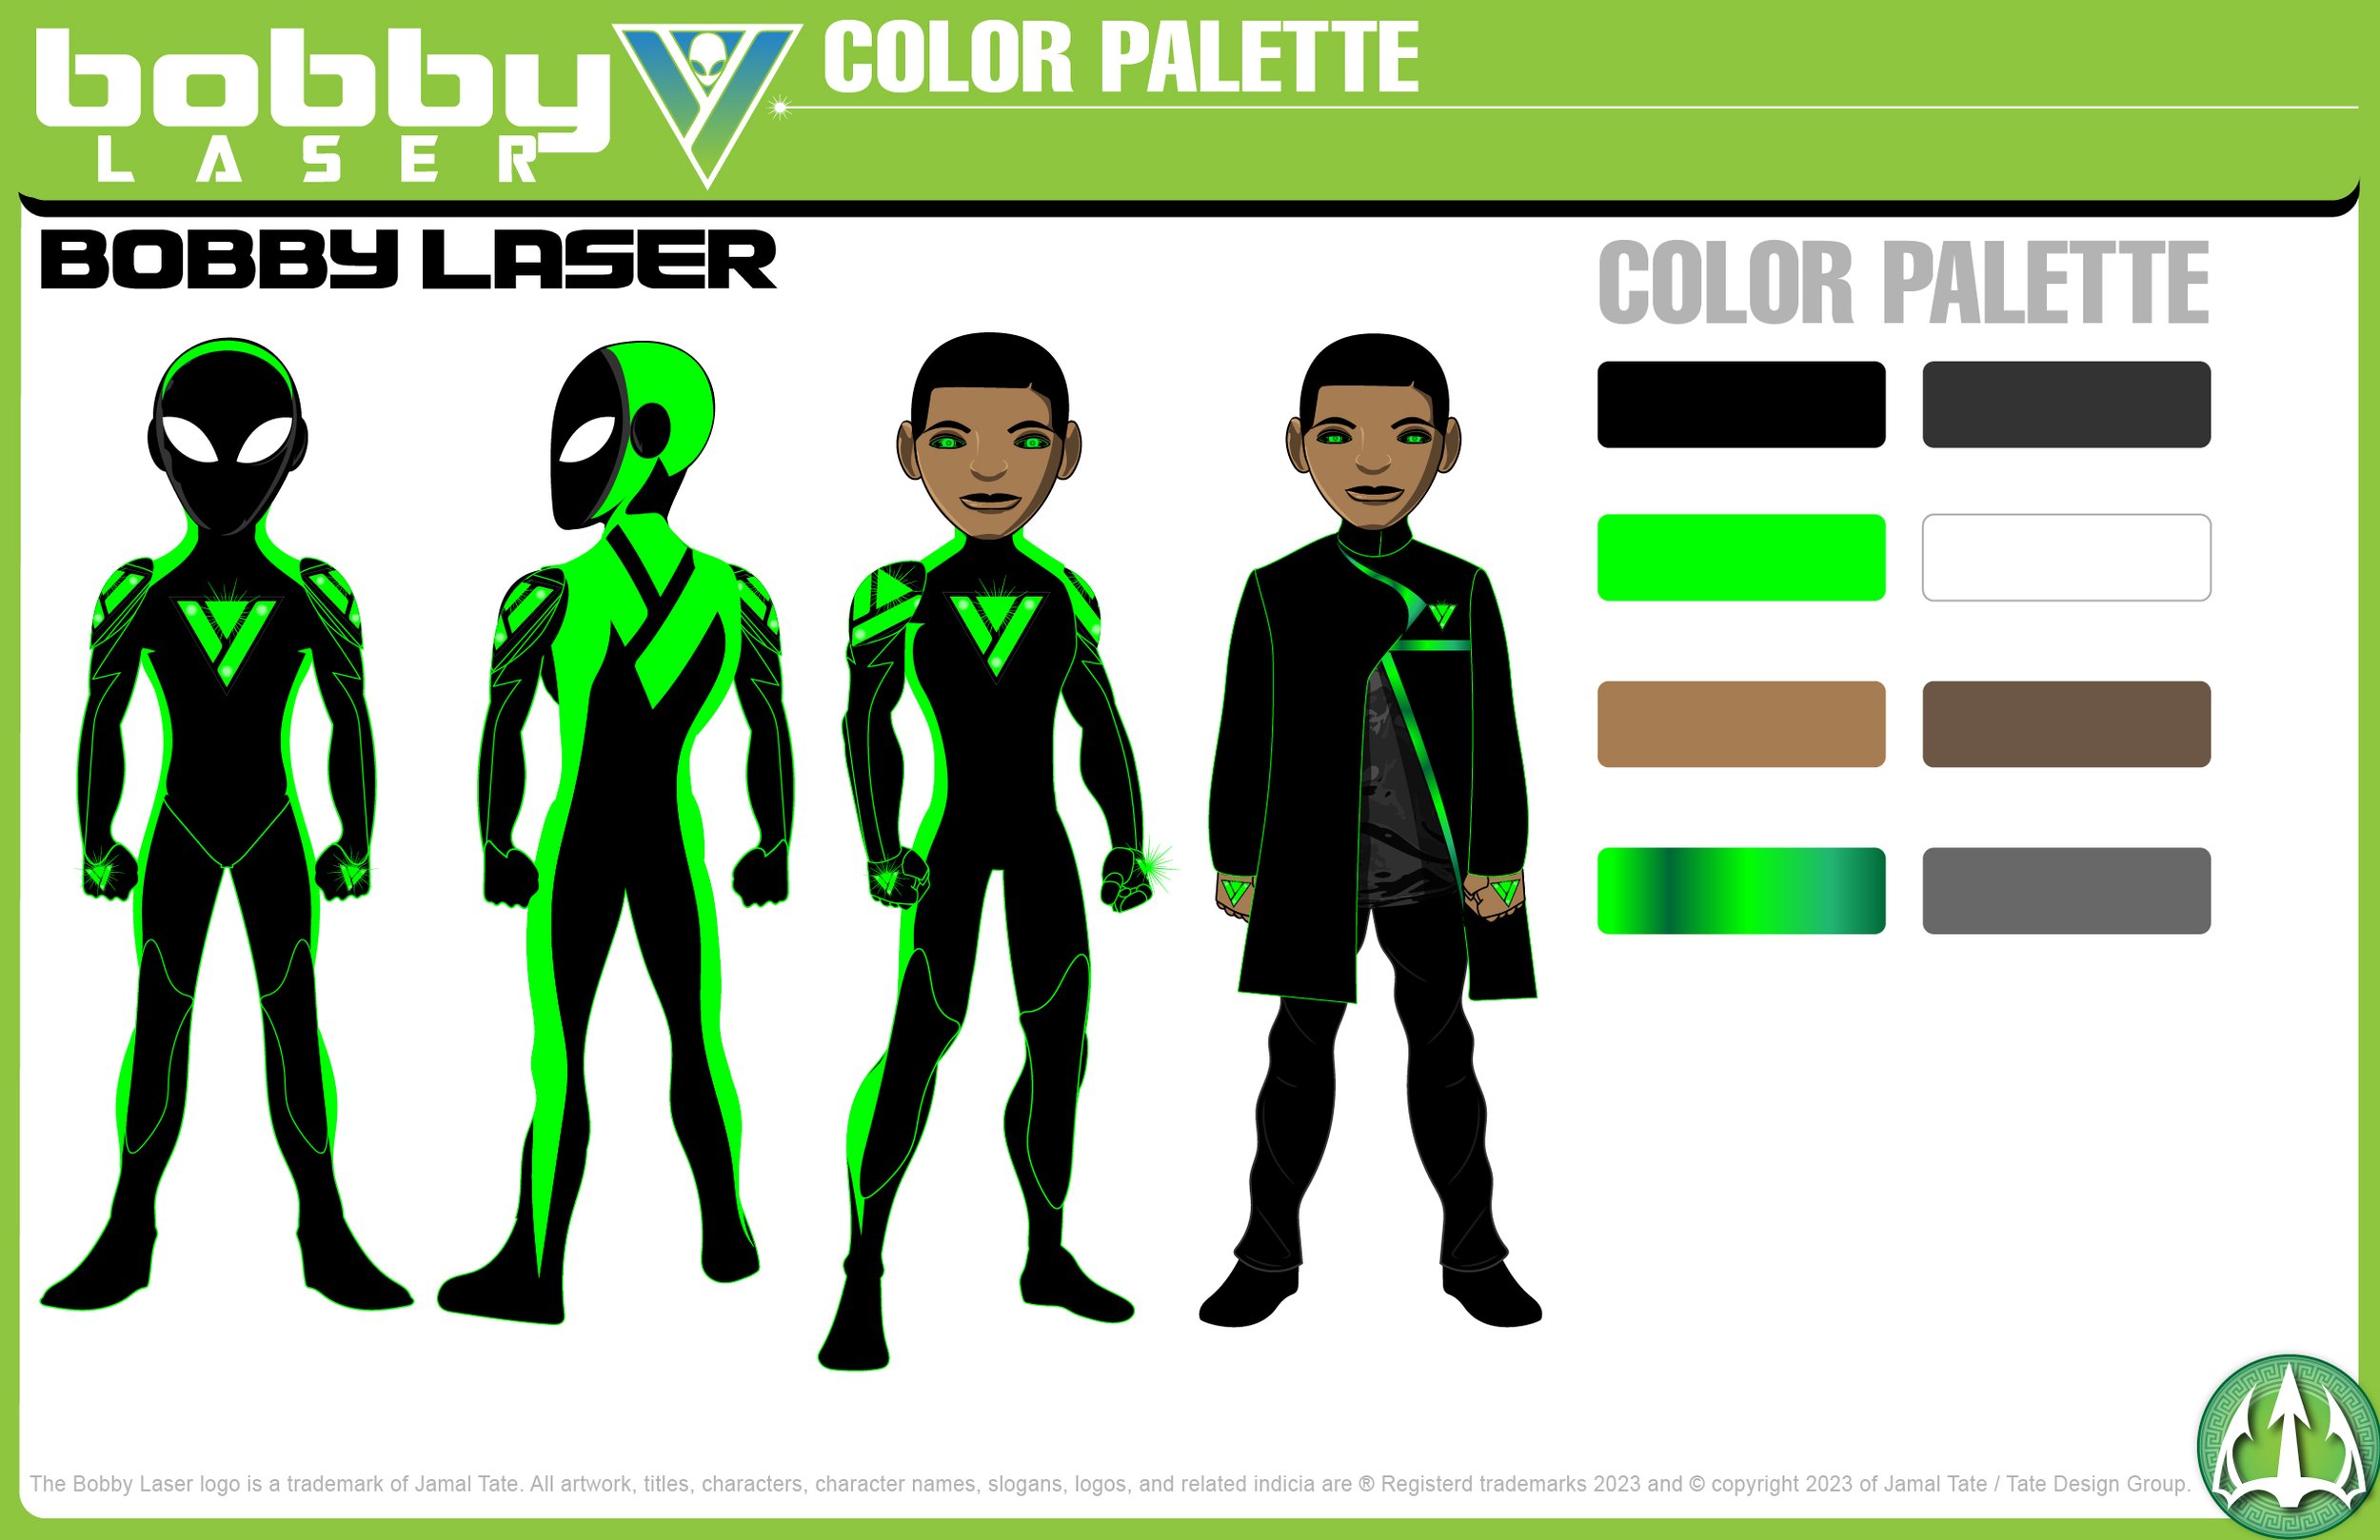 BOBBY LAZER Character Color Palette.jpg